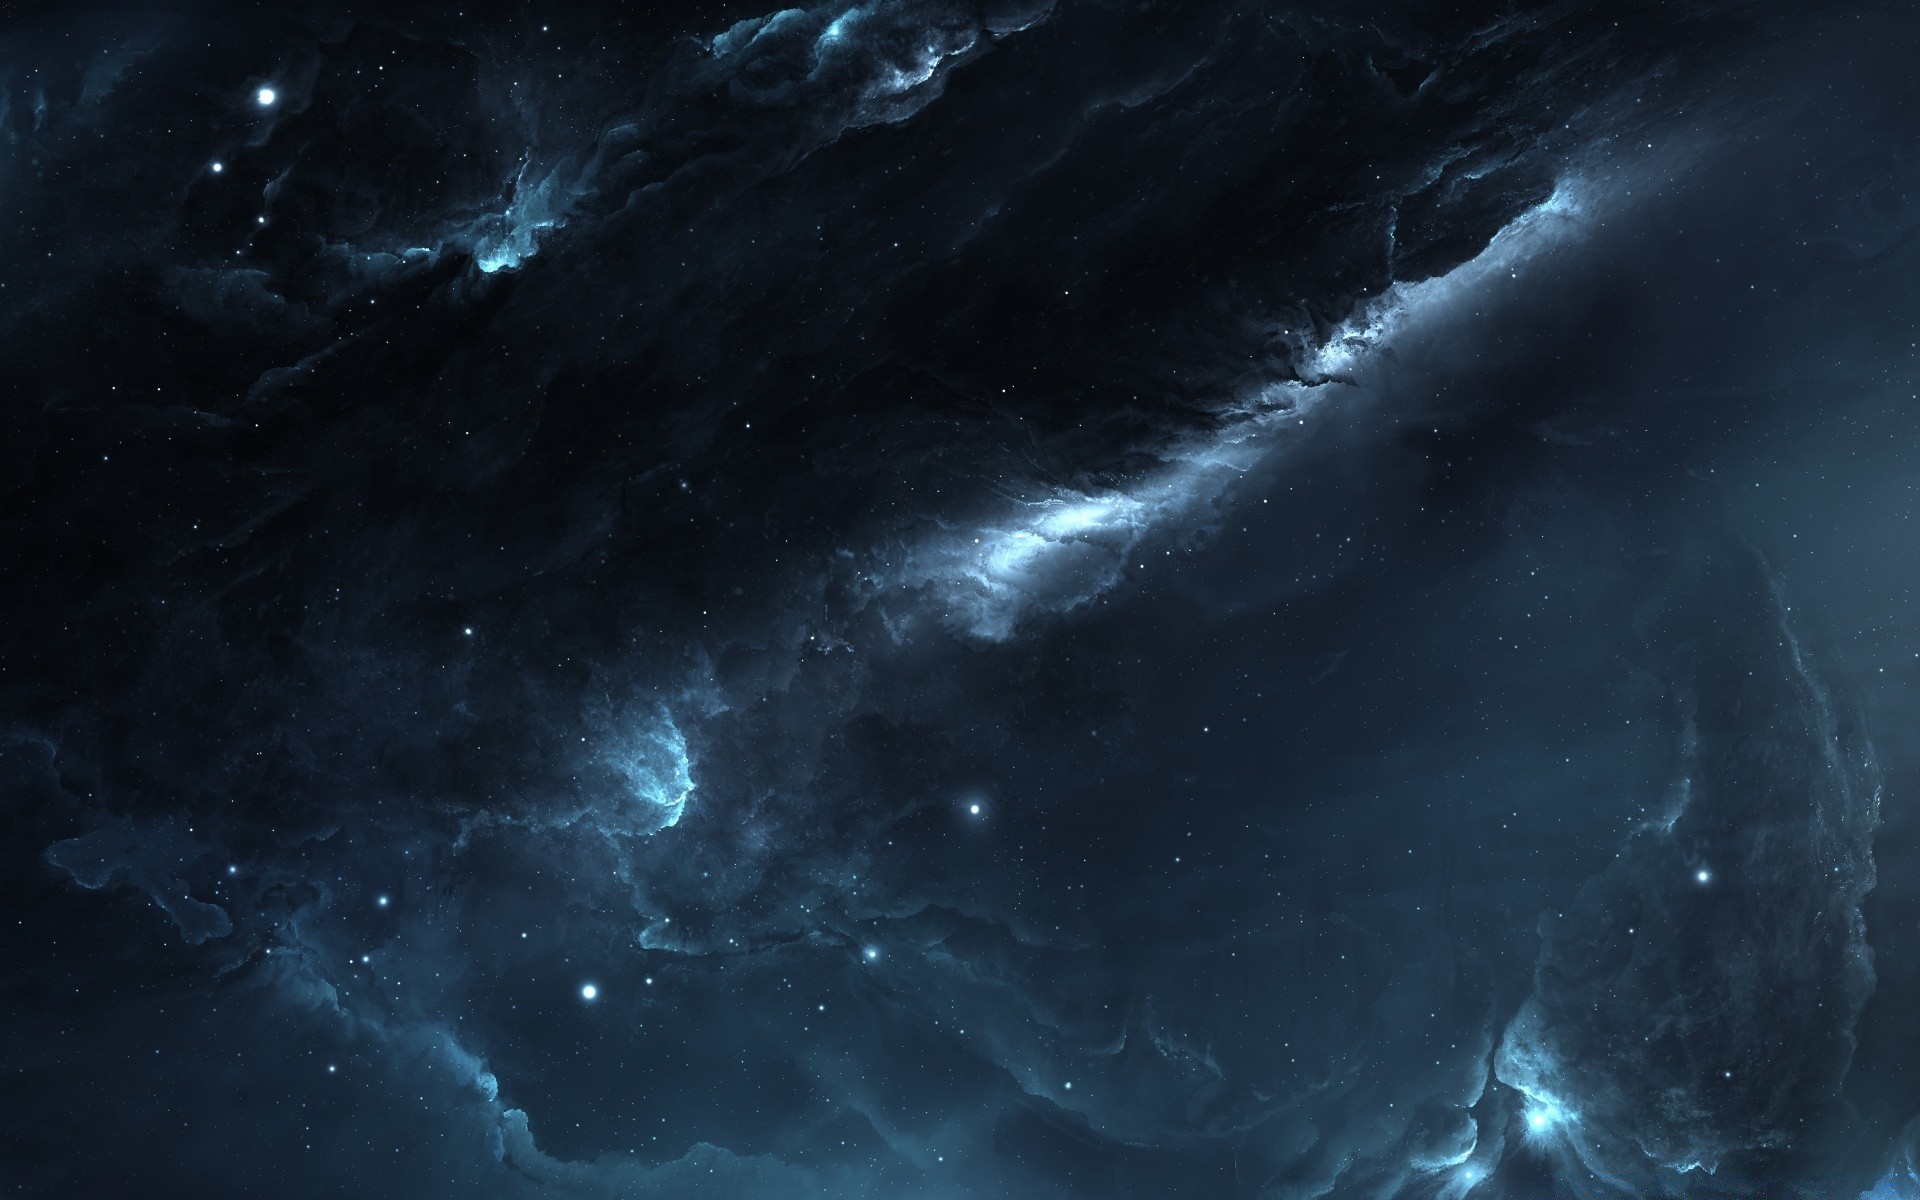 космос астрономия луна темный разведка галактика шторм небо планеты рабочего стола природа аннотация астрология космос свет глубокий наука дождь